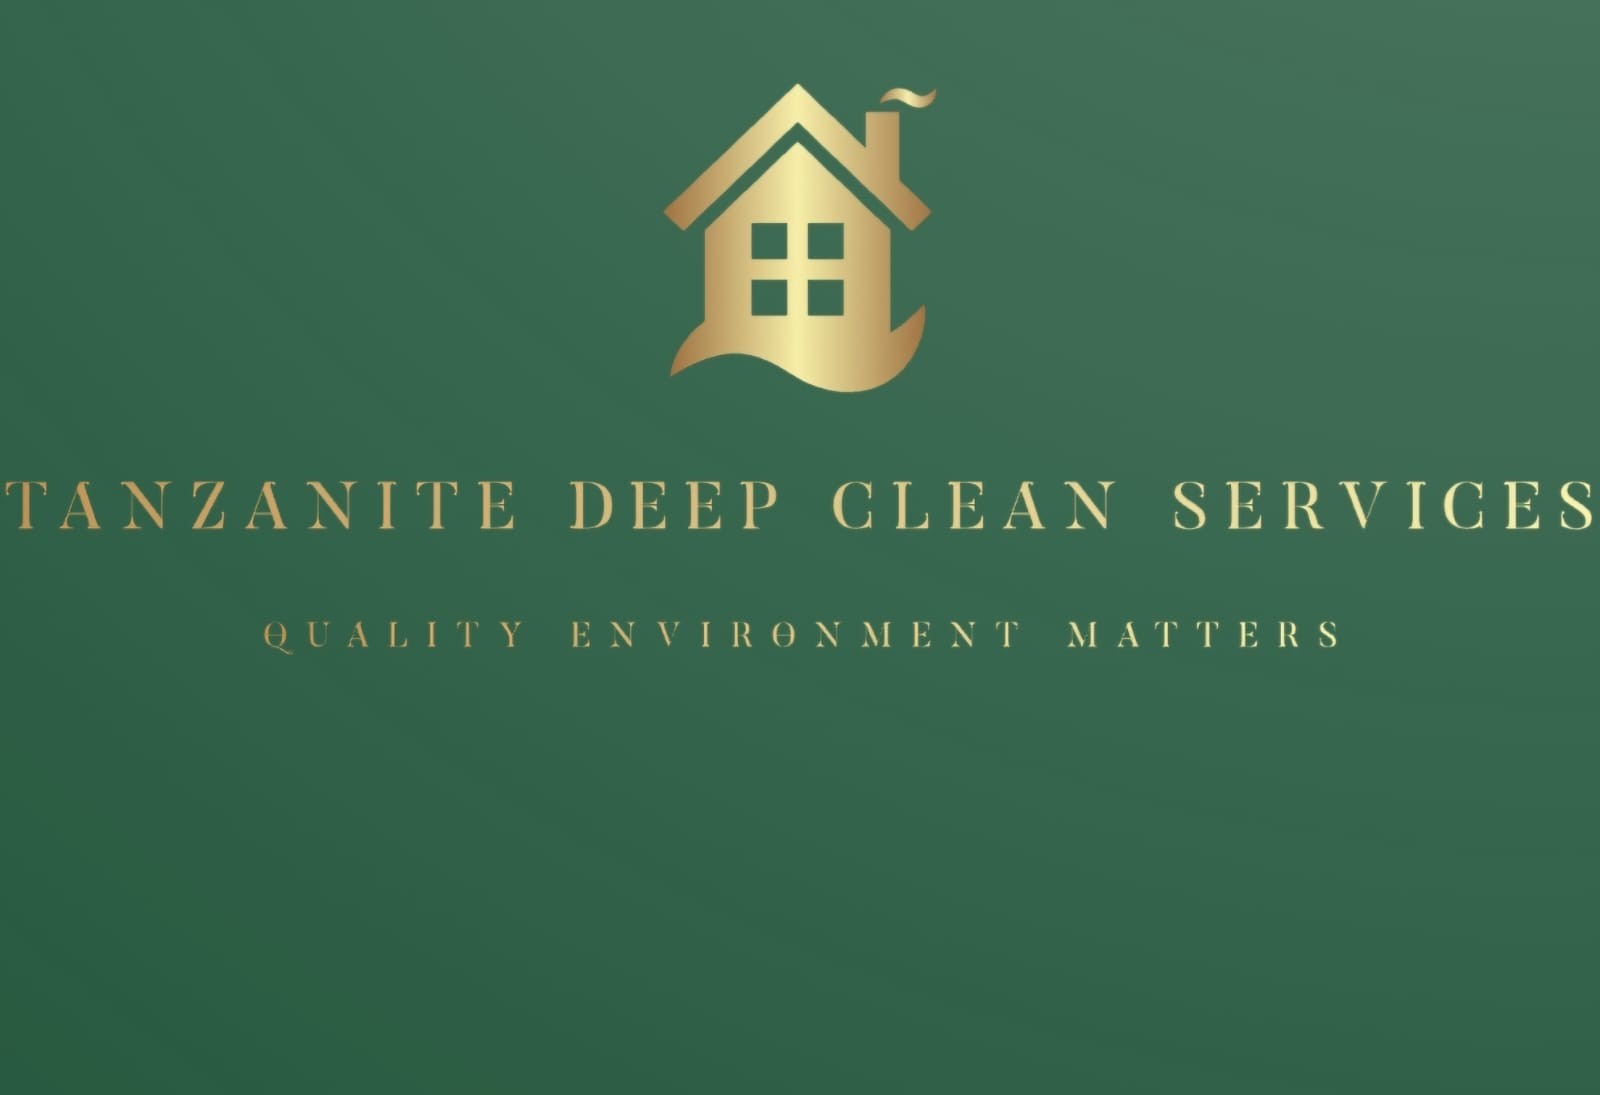 Tanzanite deep clean's logo